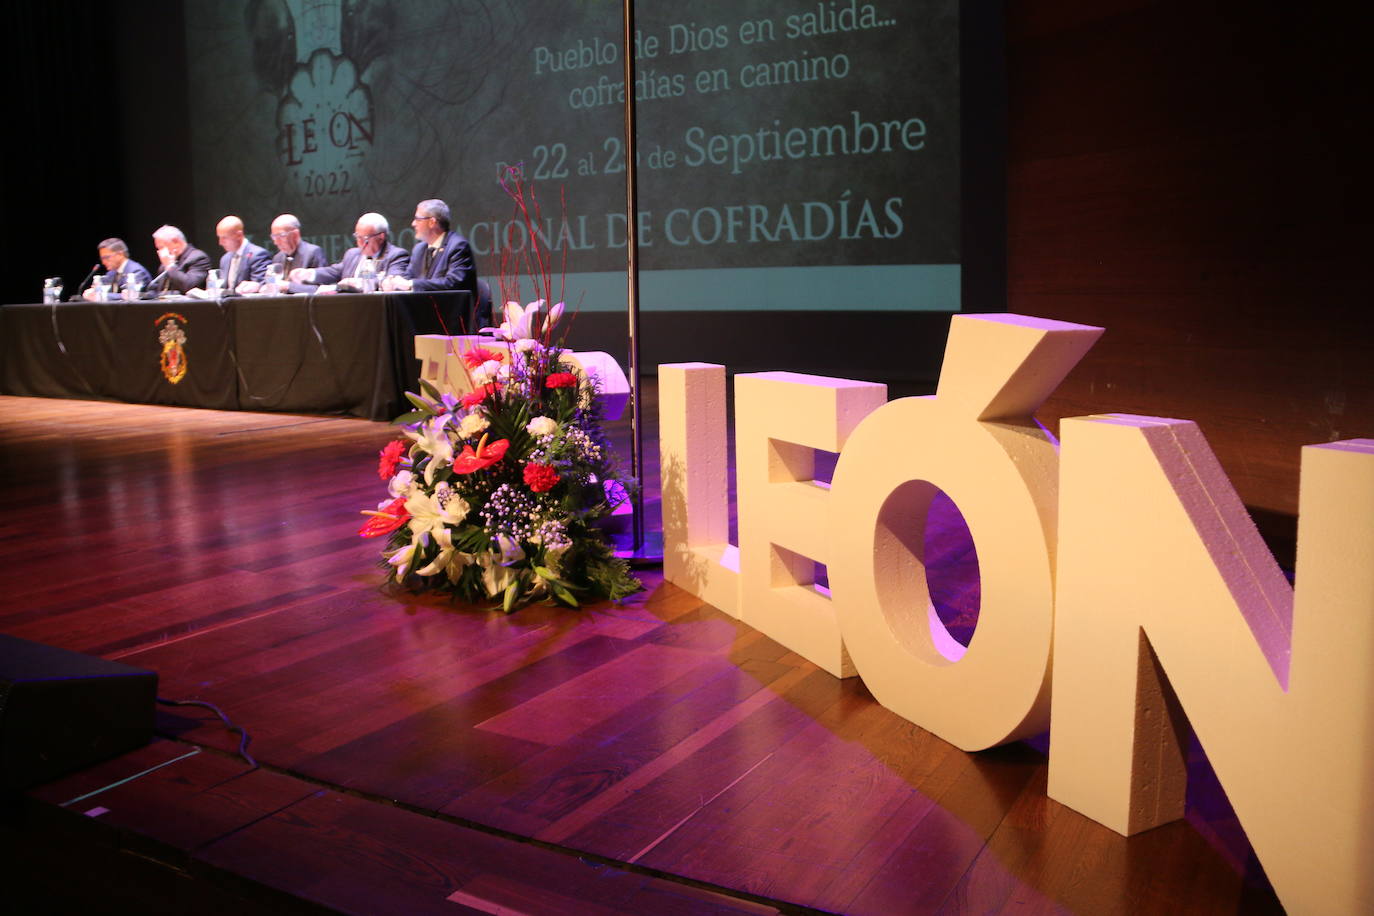 Inauguración del 33 Encuentro Nacional de Cofradías Penitenciales en el Auditorio de León. 